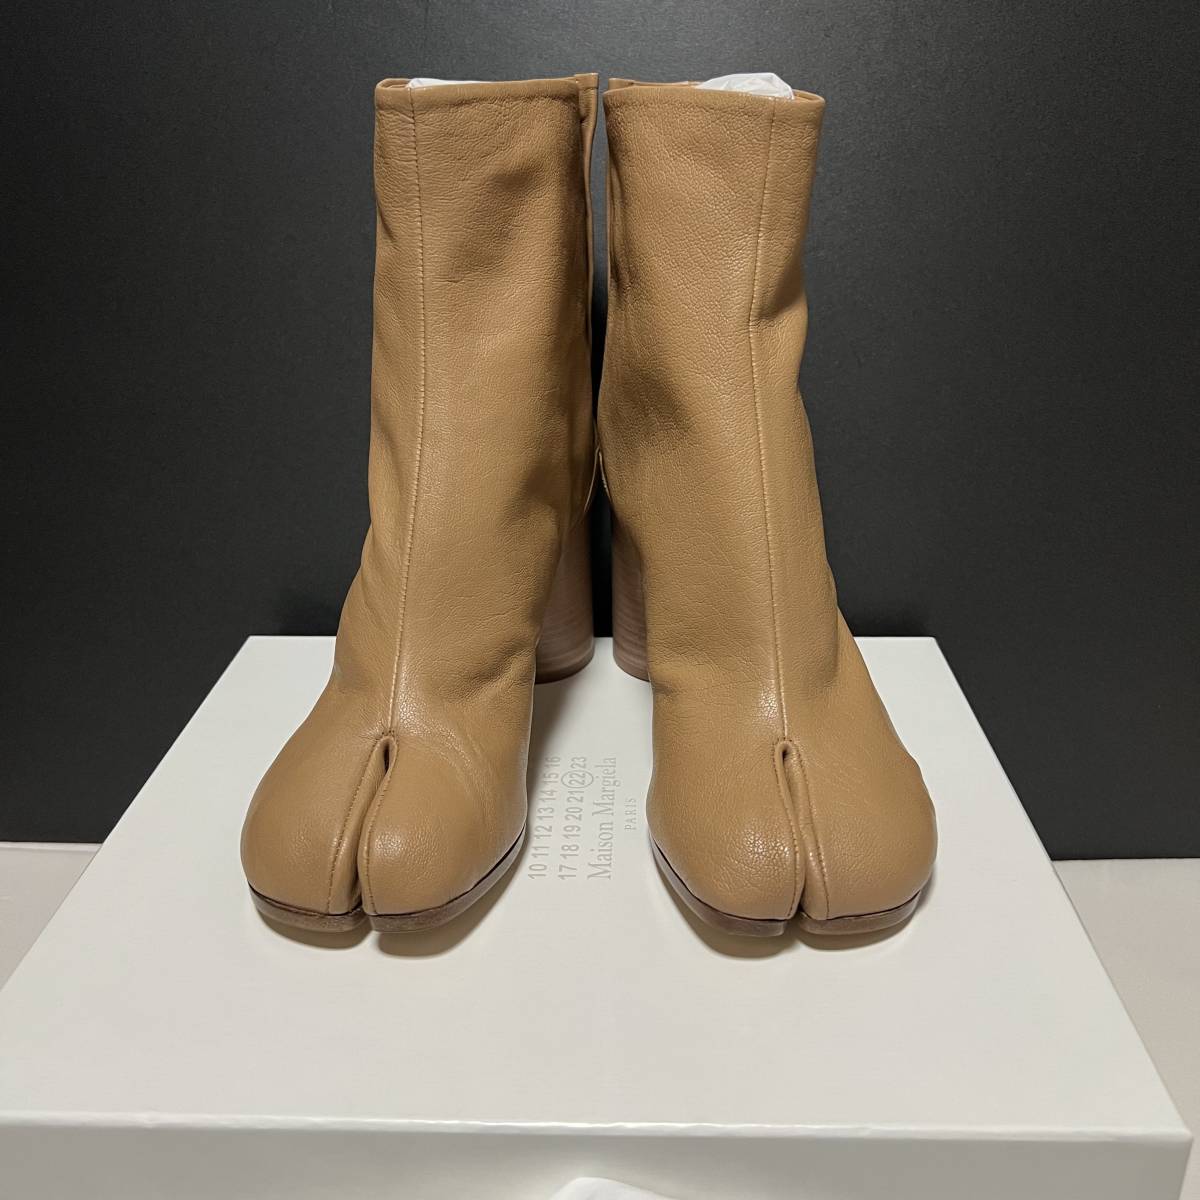 新品 Maison Margiela メゾンマルジェラ Tabi タビ 足袋レザー ブーツ vintage leather Tabi Boots ヴィンテージレザー 38.5